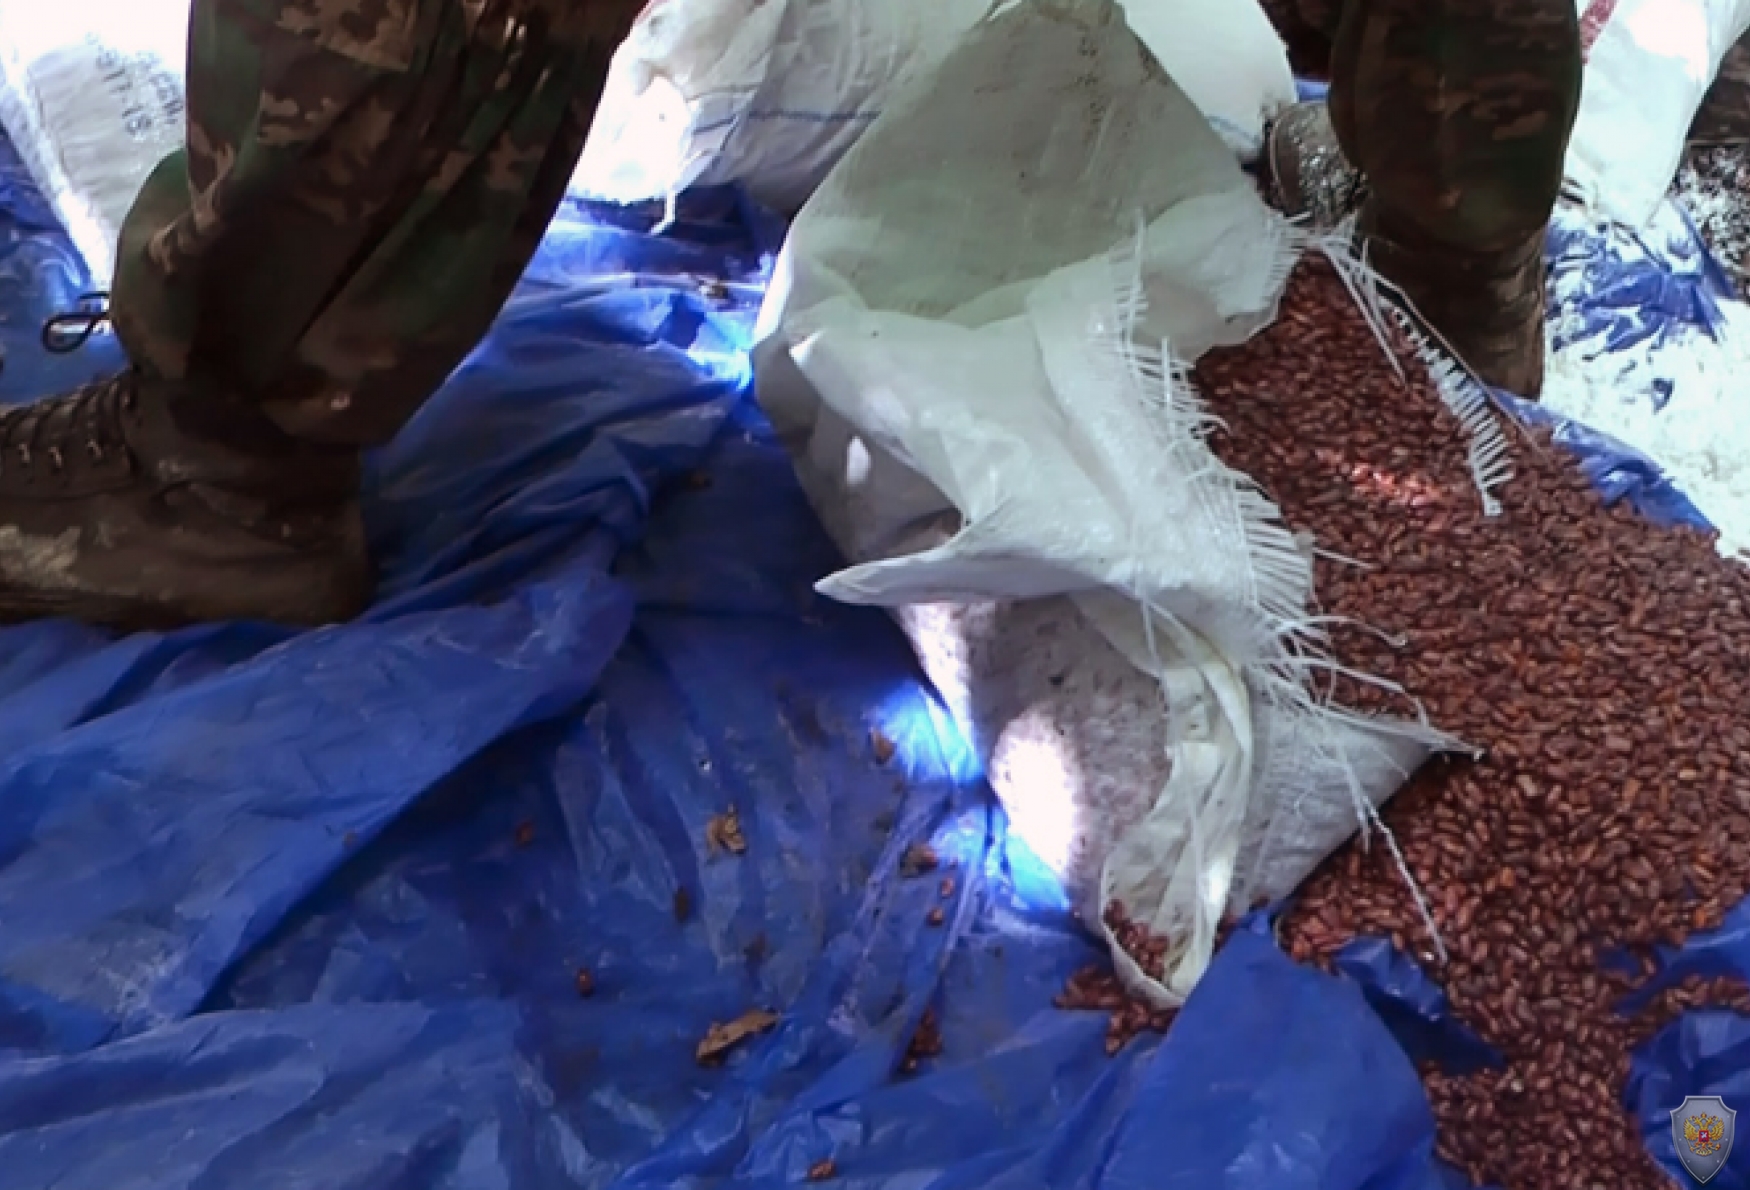 В Ингушетии уничтожена крупная продовольственная база бандподполья, в Дагестане обнаружено два бандитских тайника